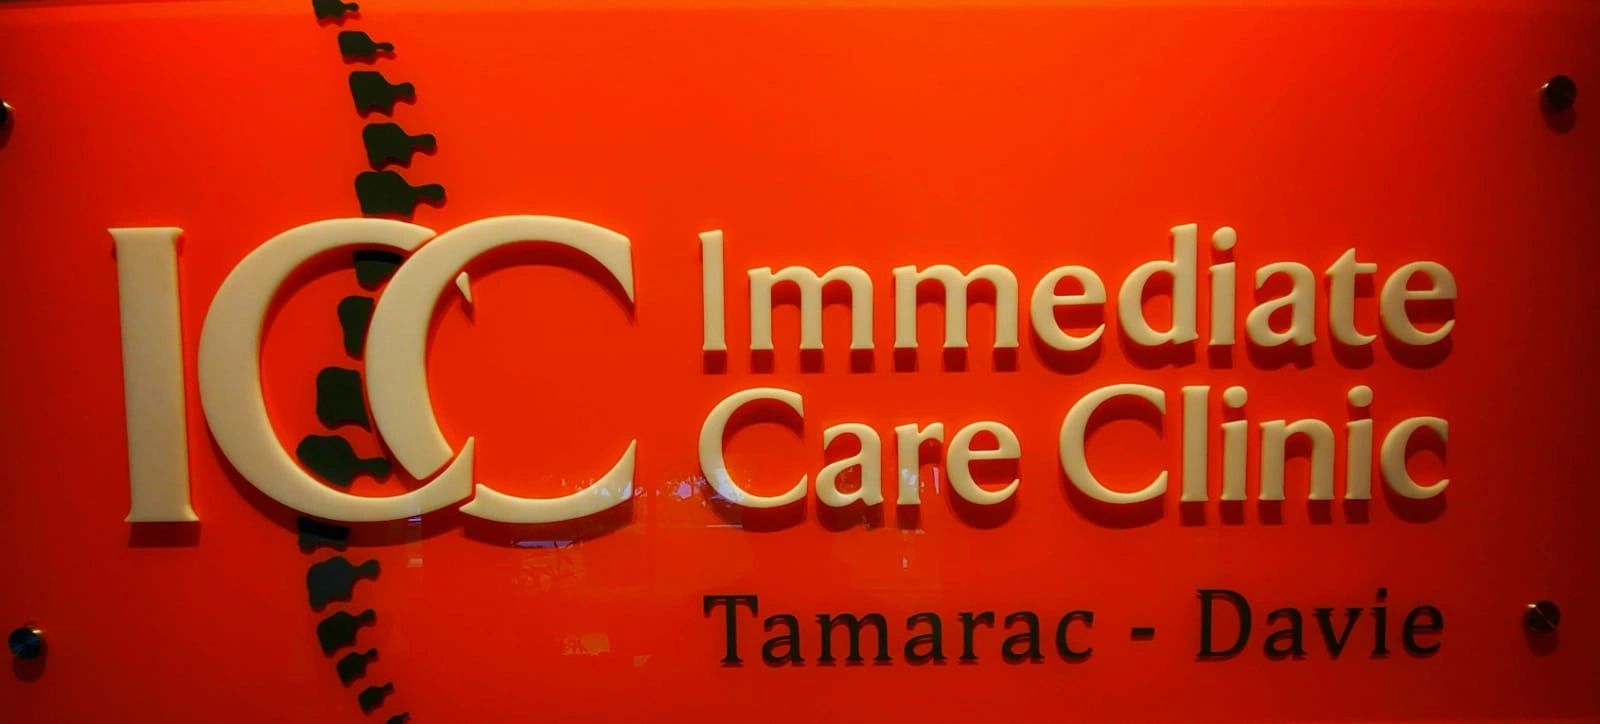 immediate care clinic tamarac